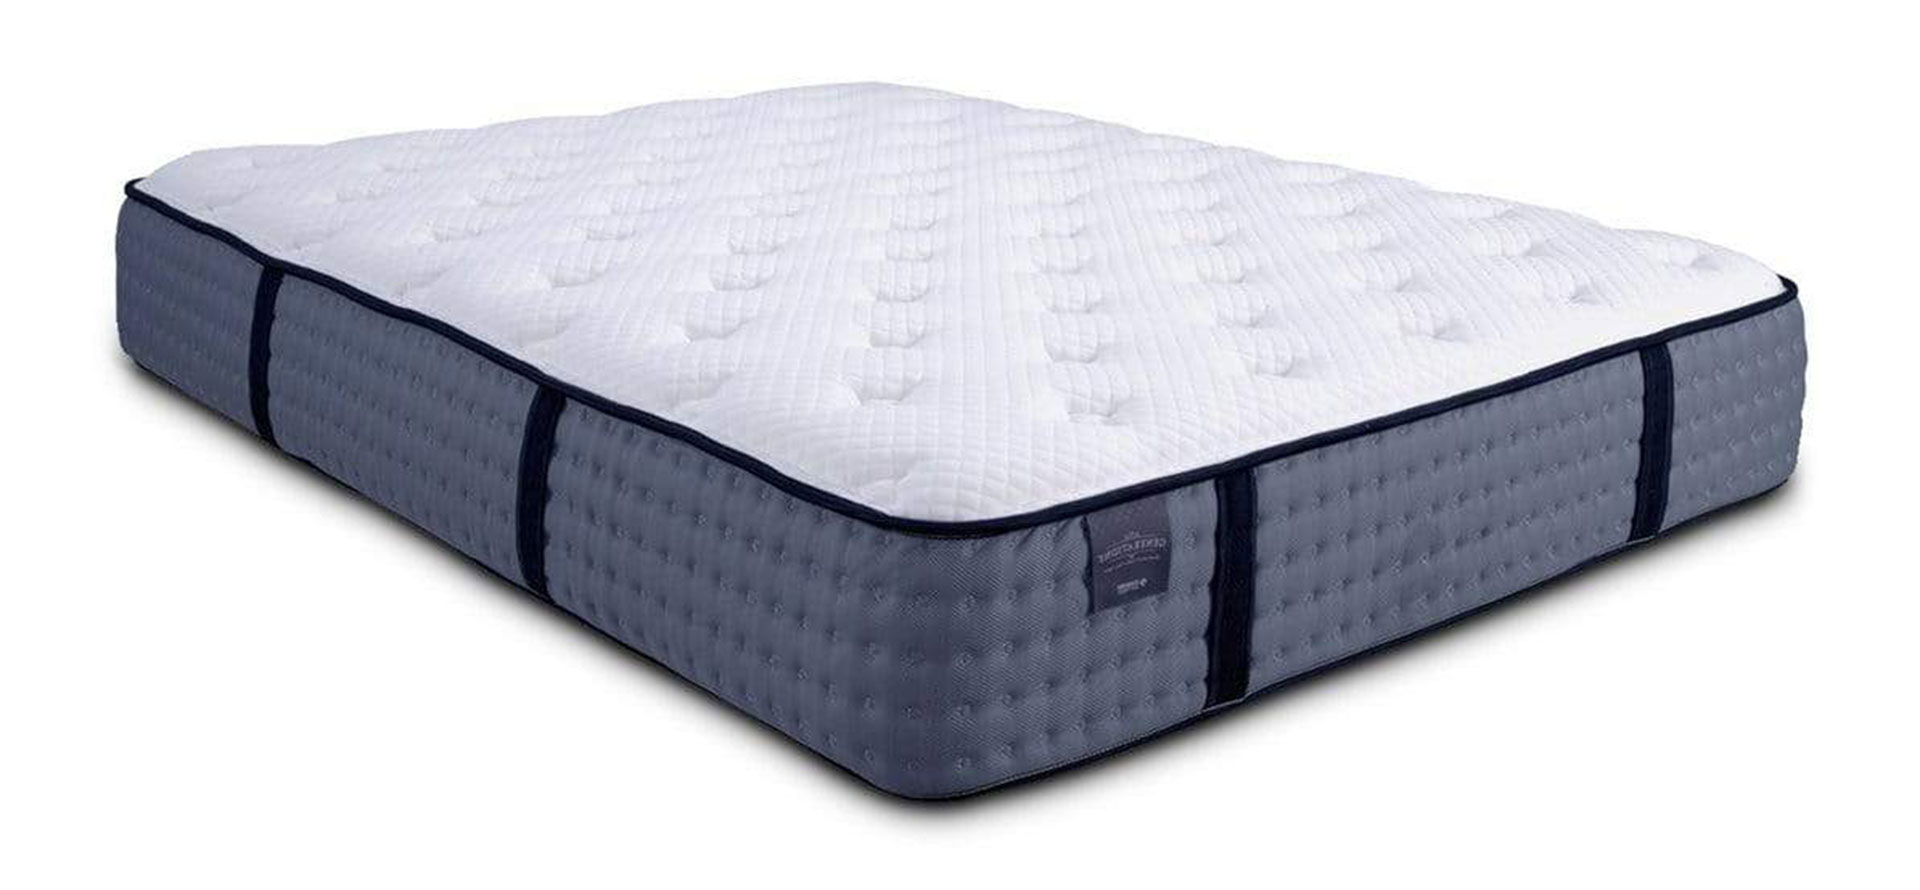 Soft foam mattress.